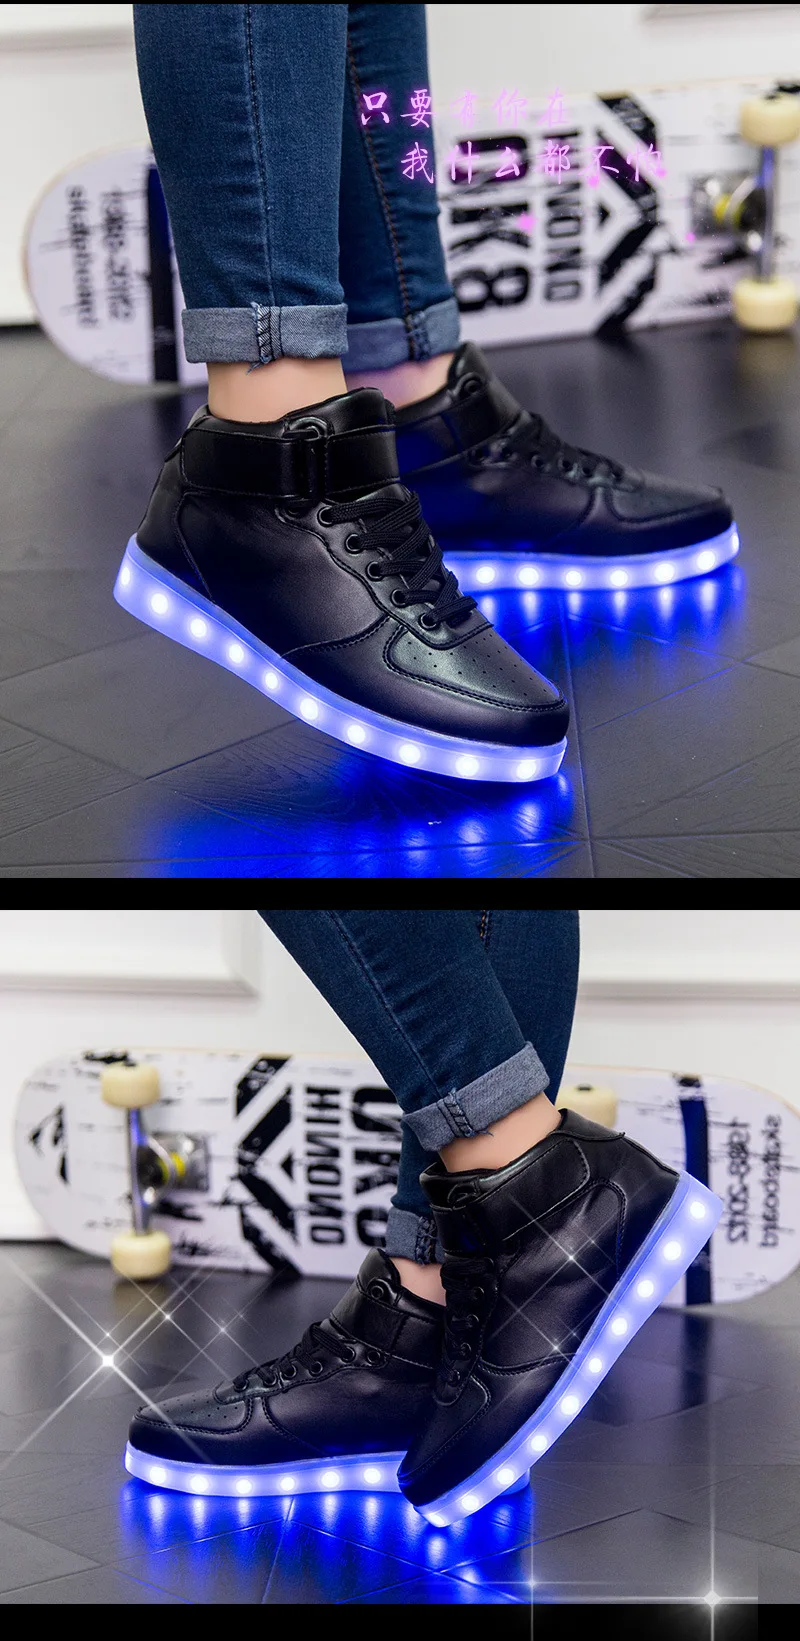 Keduoduo/обувь со светодиодной подсветкой для взрослых; Повседневная обувь со светодиодной подсветкой; Мужская и женская обувь с высоким берцем; светящаяся обувь большого размера; 3 цвета